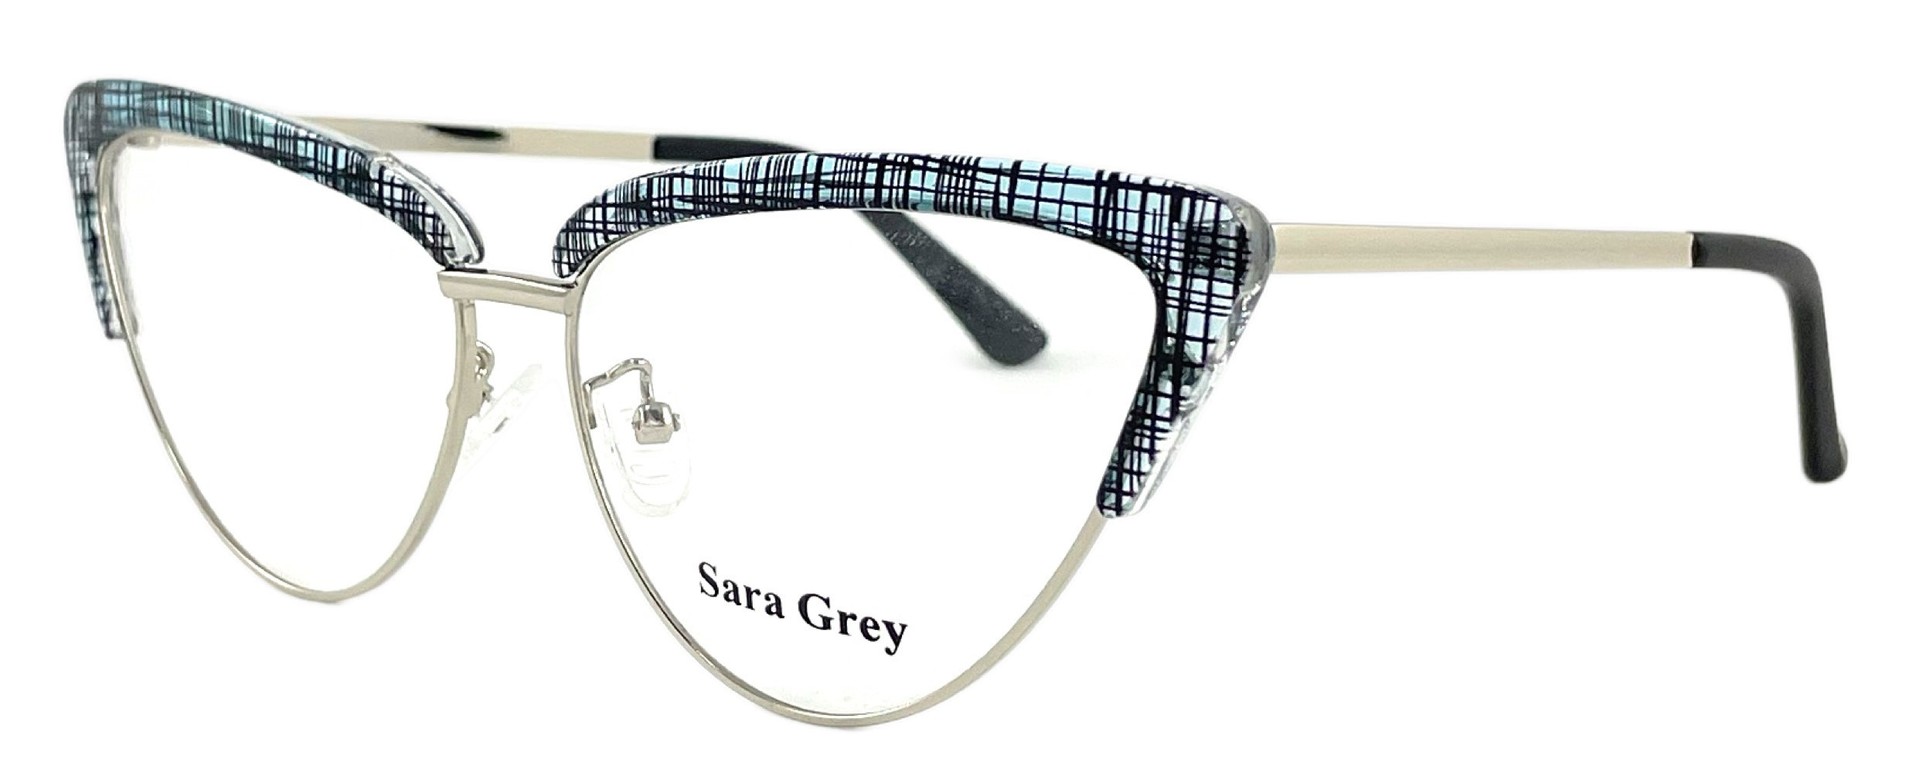 Sara Grey 8704 C3 2